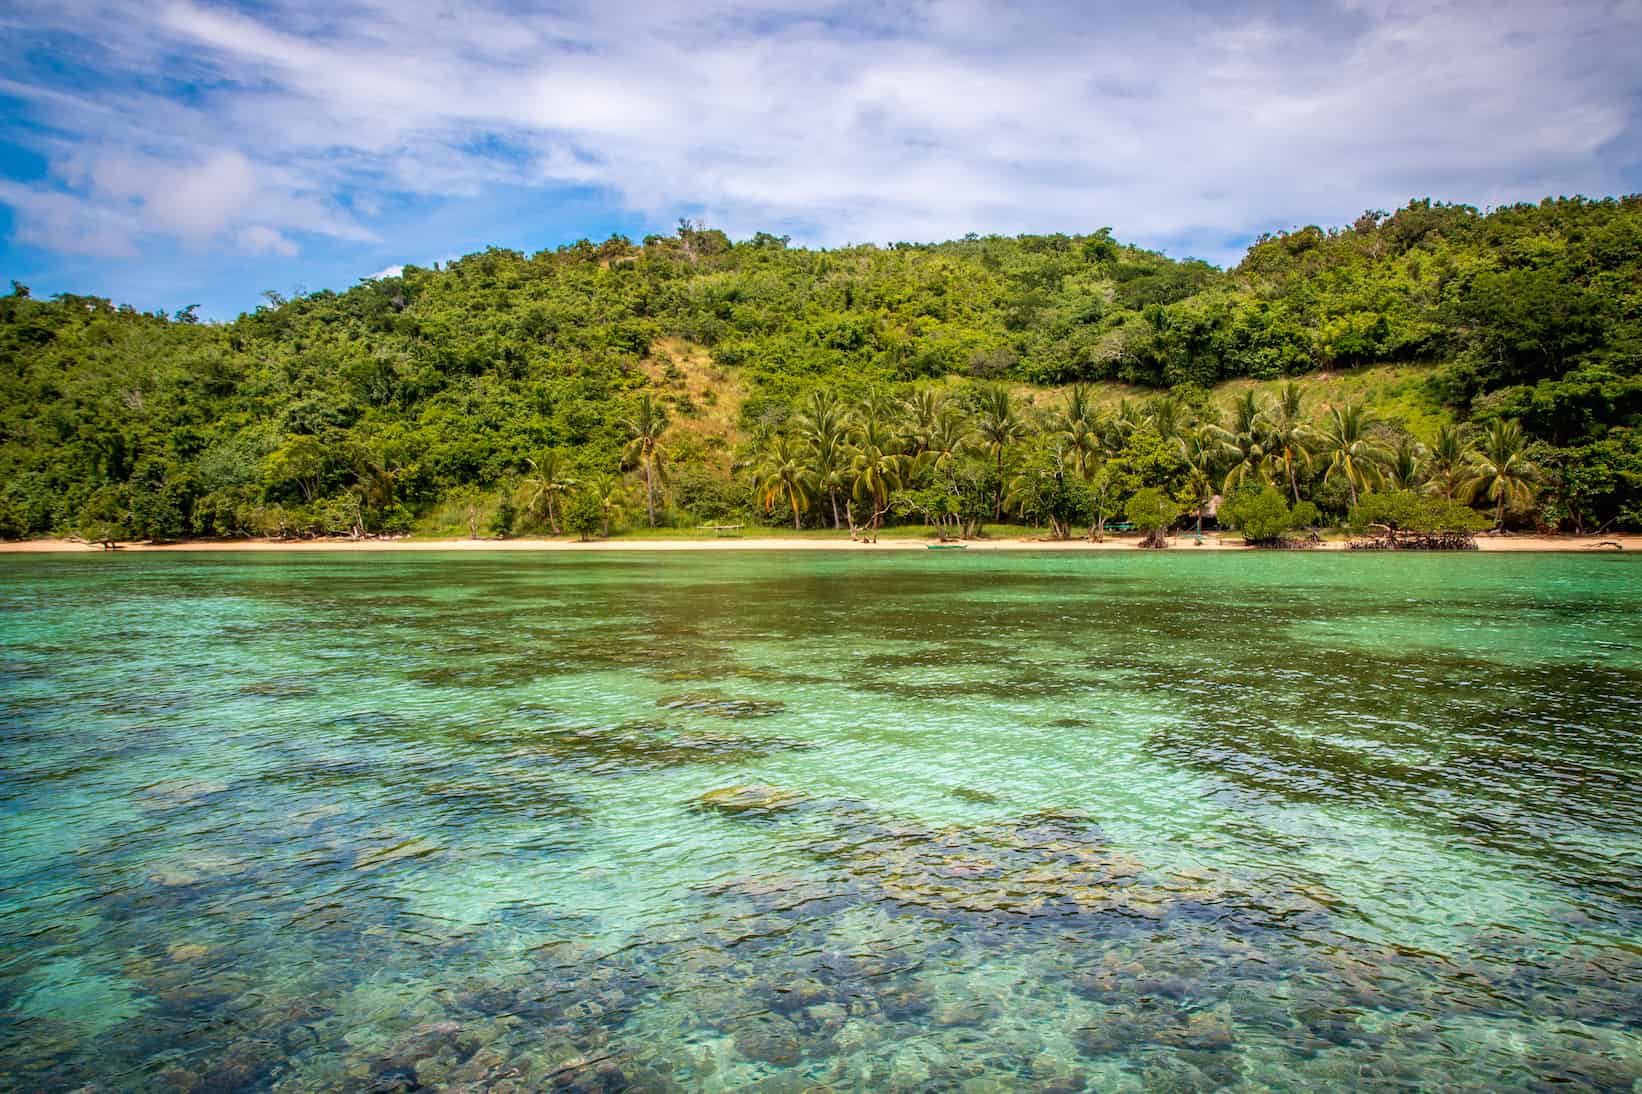 Dimalanta Island in Coron, Palawan